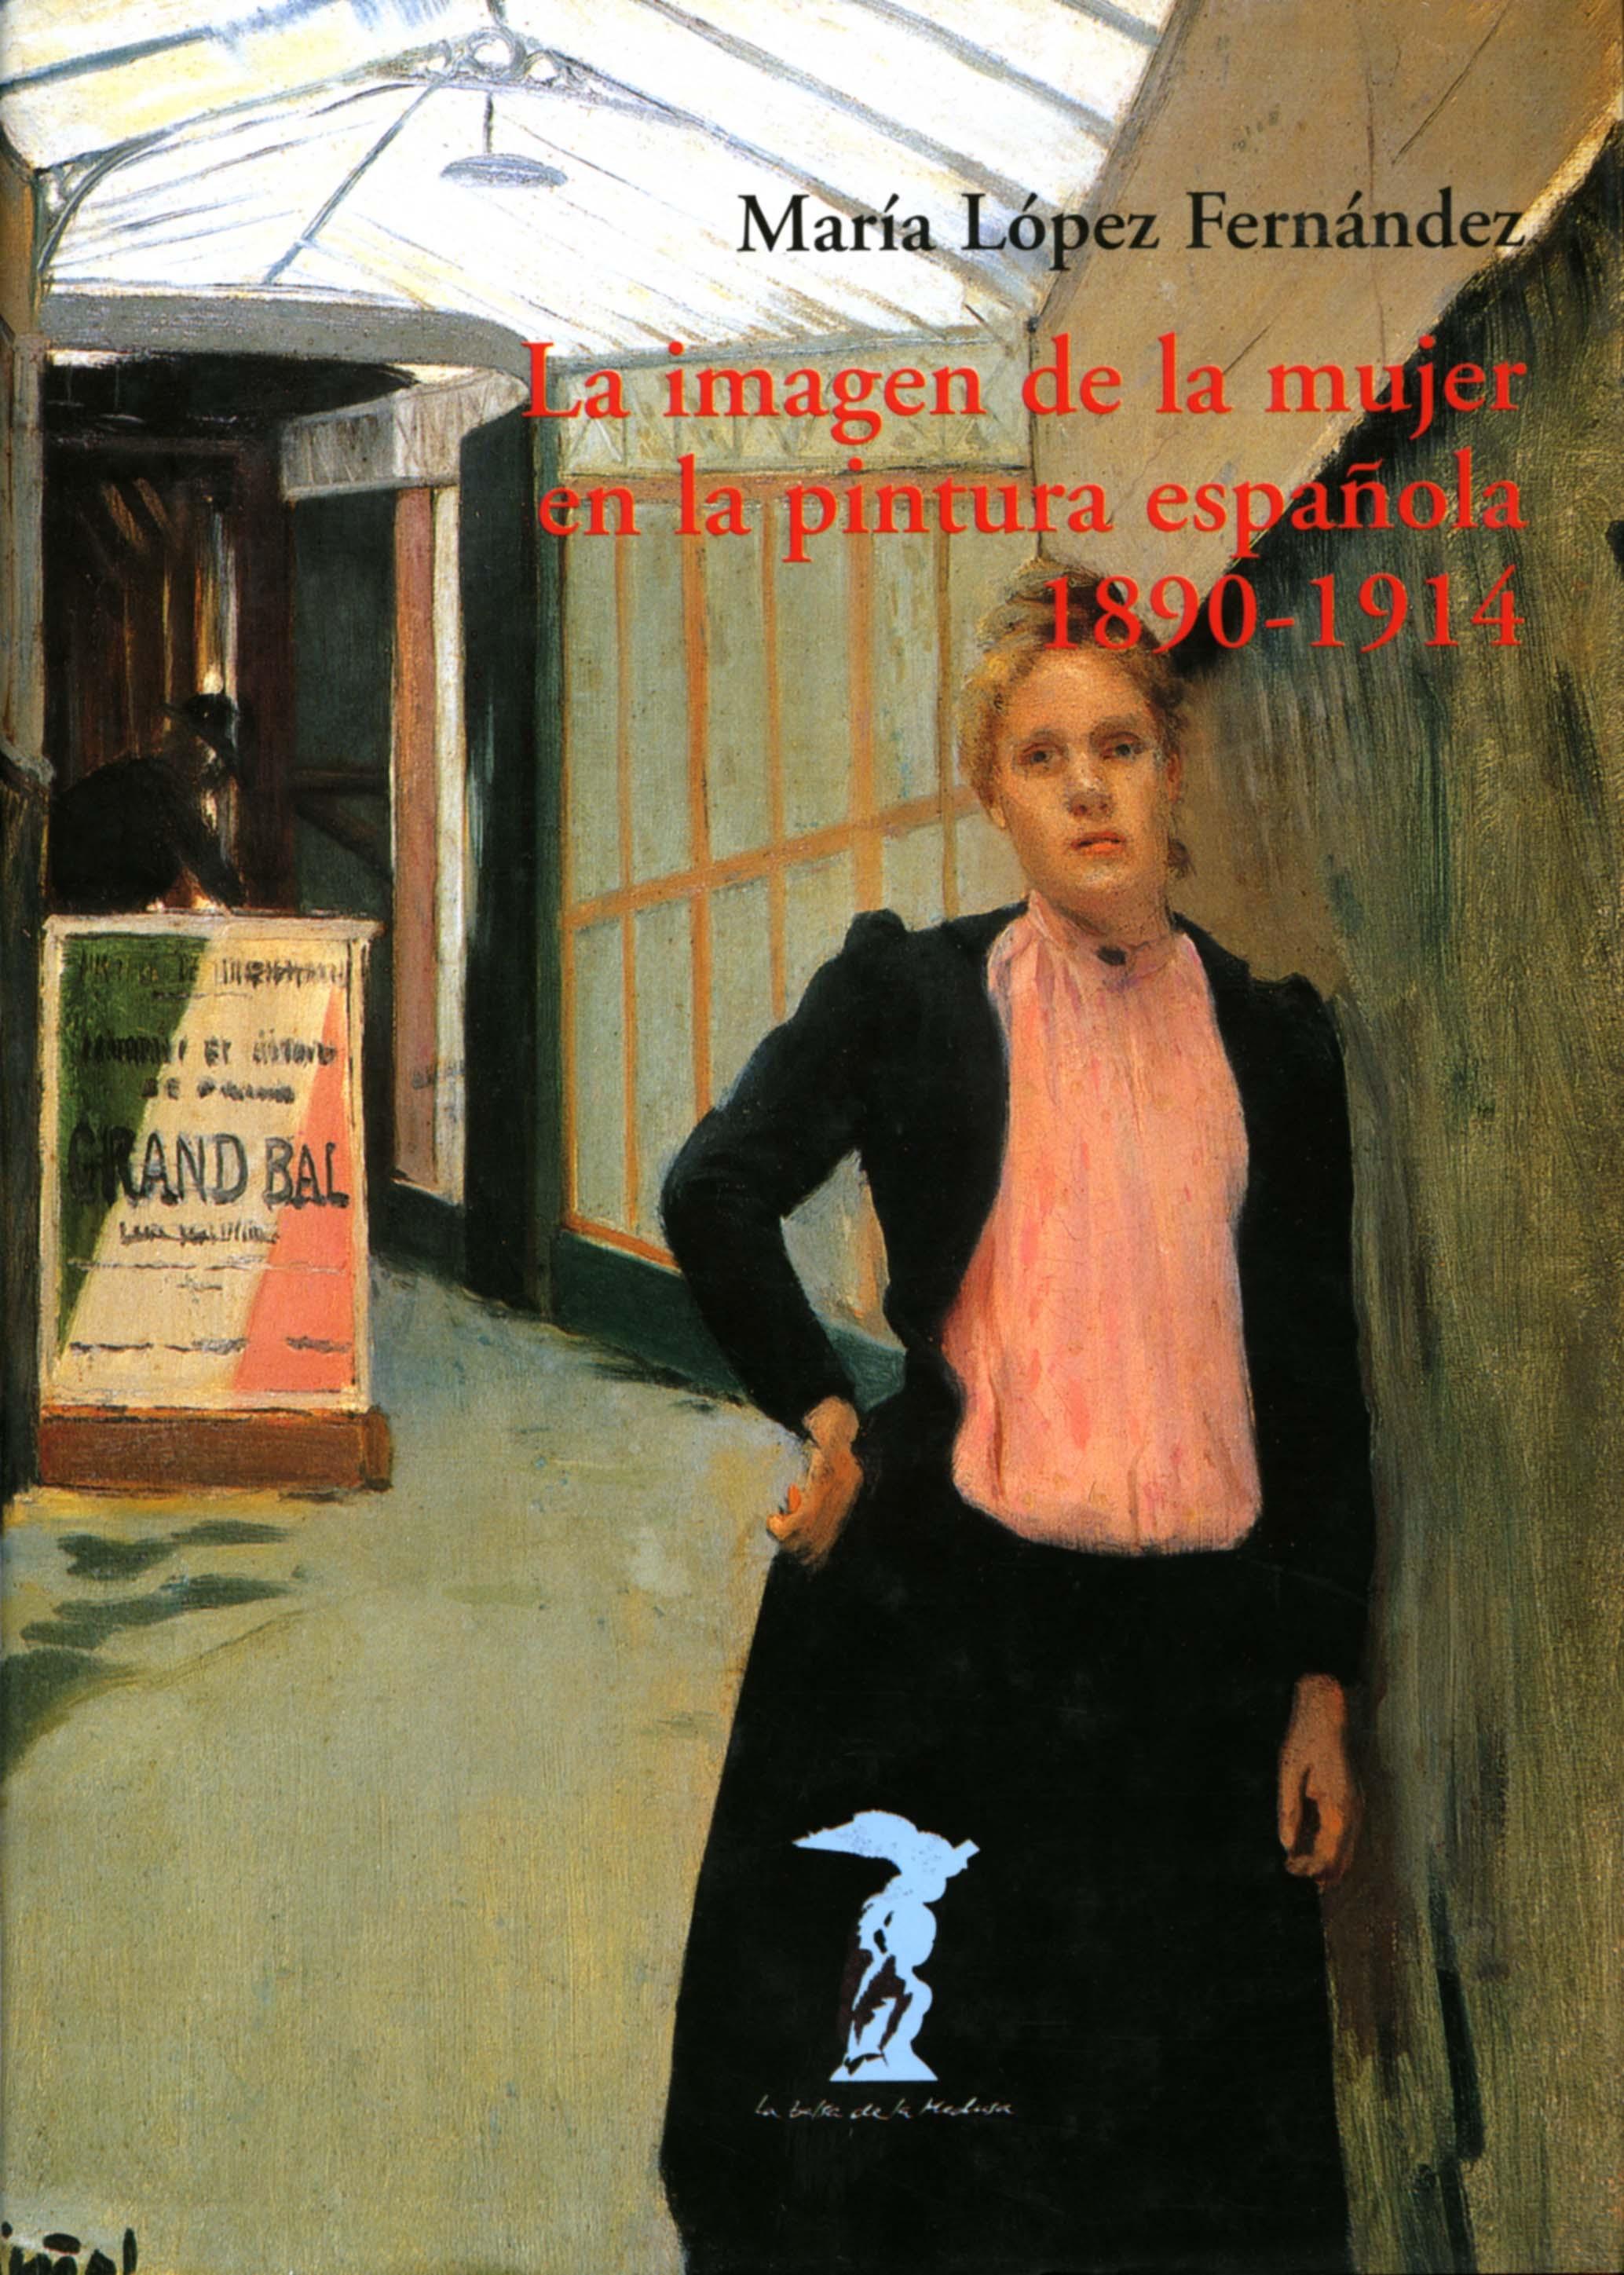 La imagen de la mujer en la pintura española "1890-1914". 